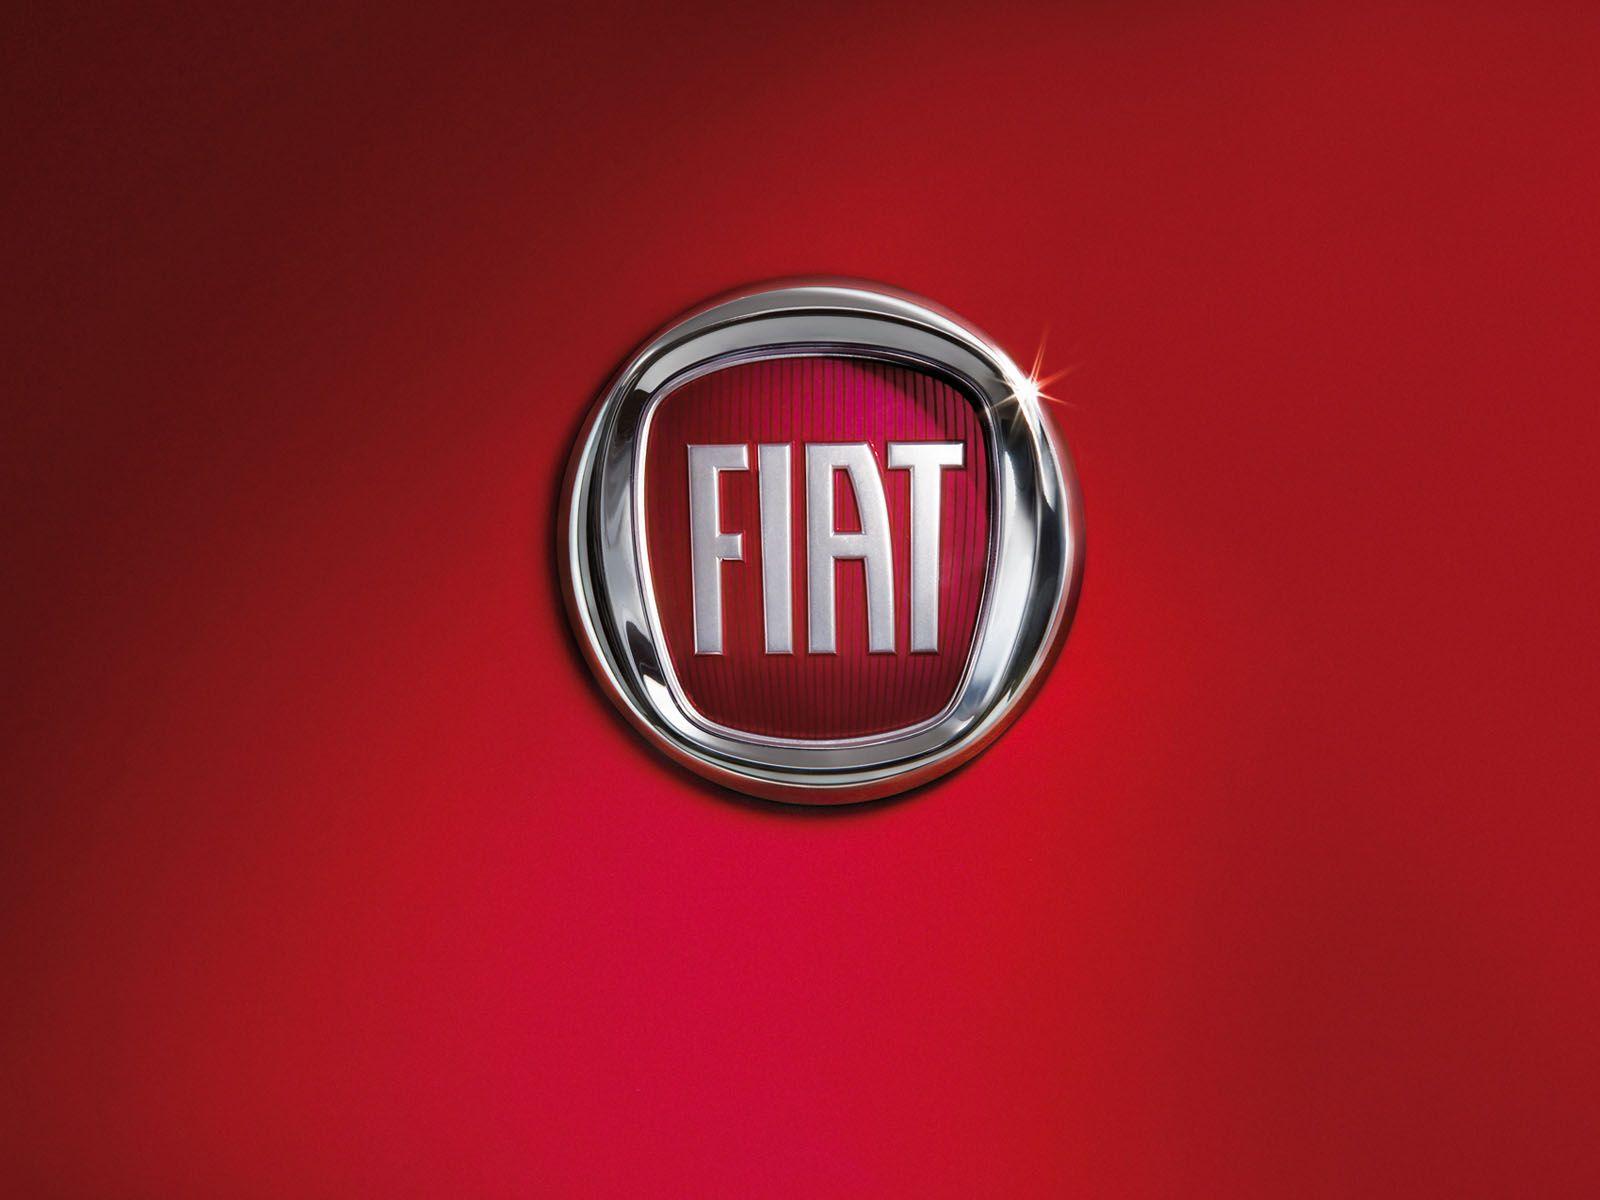 Fiat Logo - Fiat Logo, Fiat Car Symbol Meaning and History. Car Brand Names.com